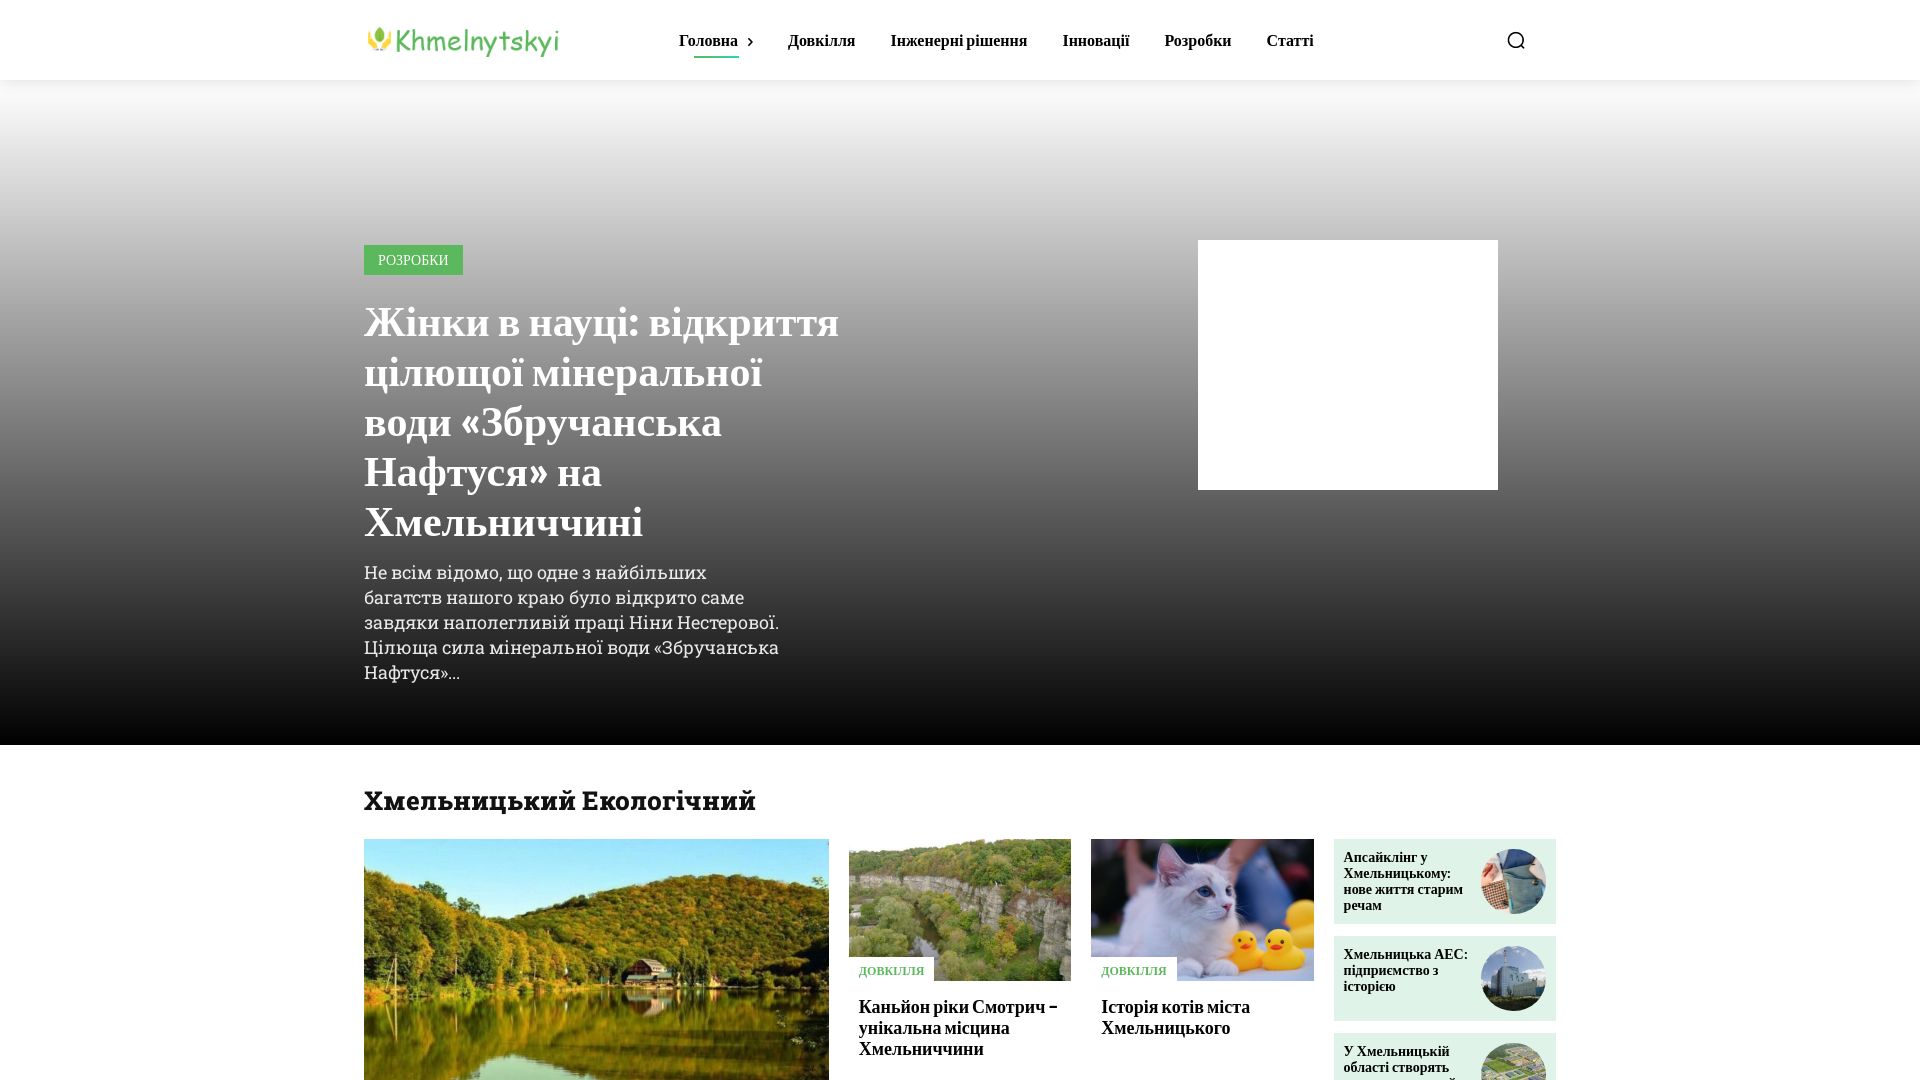 État du site web khmelnytskyi.name est   EN LIGNE